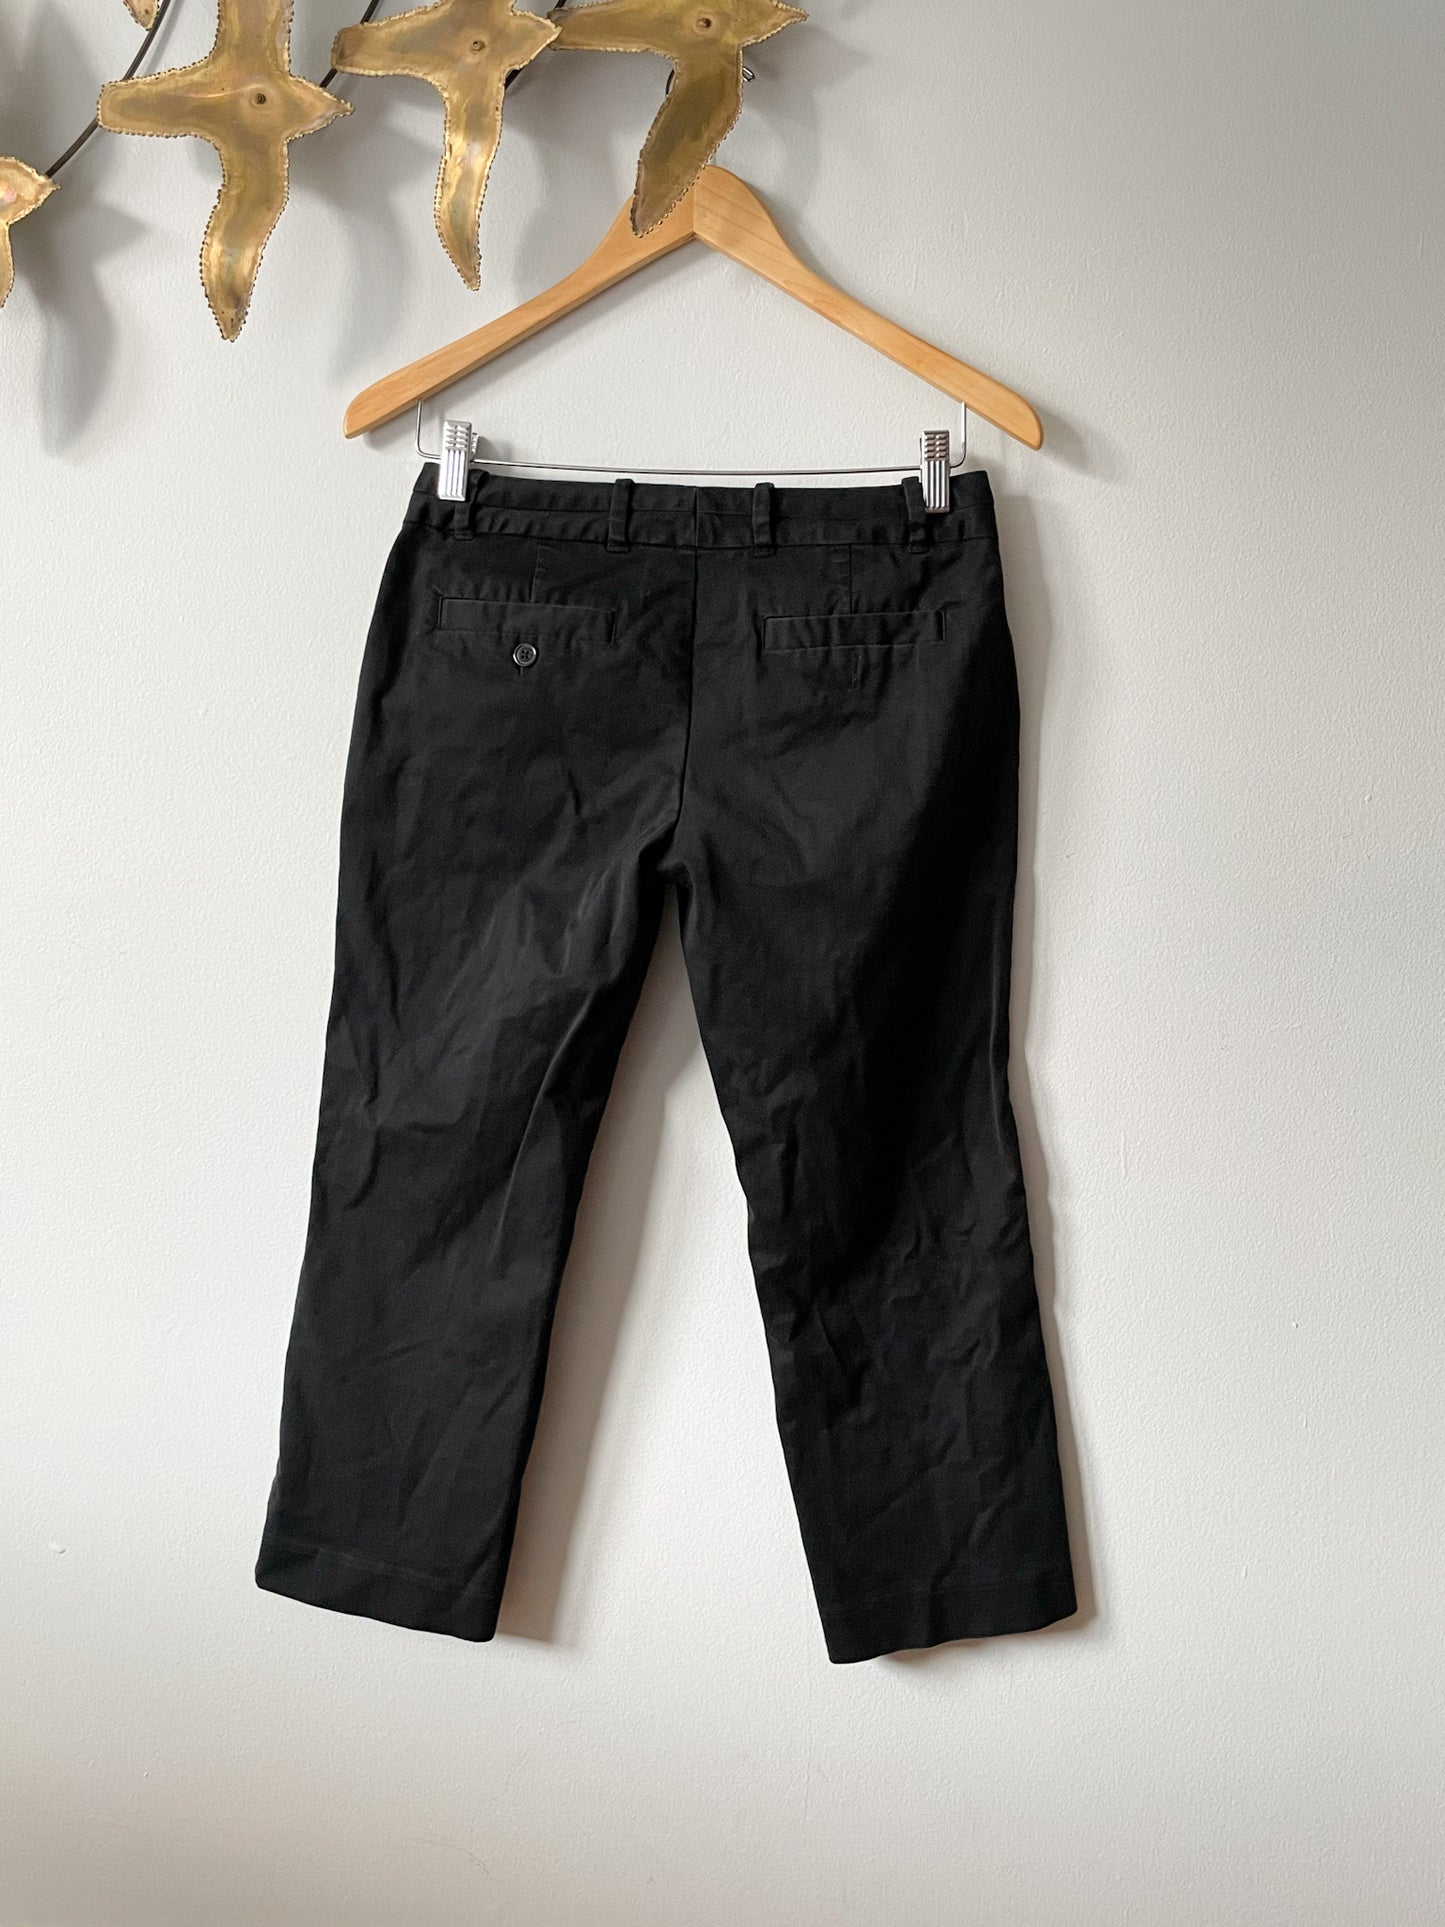 Jacob Black Cotton Stretch Capri Cropped Pants - Size 2